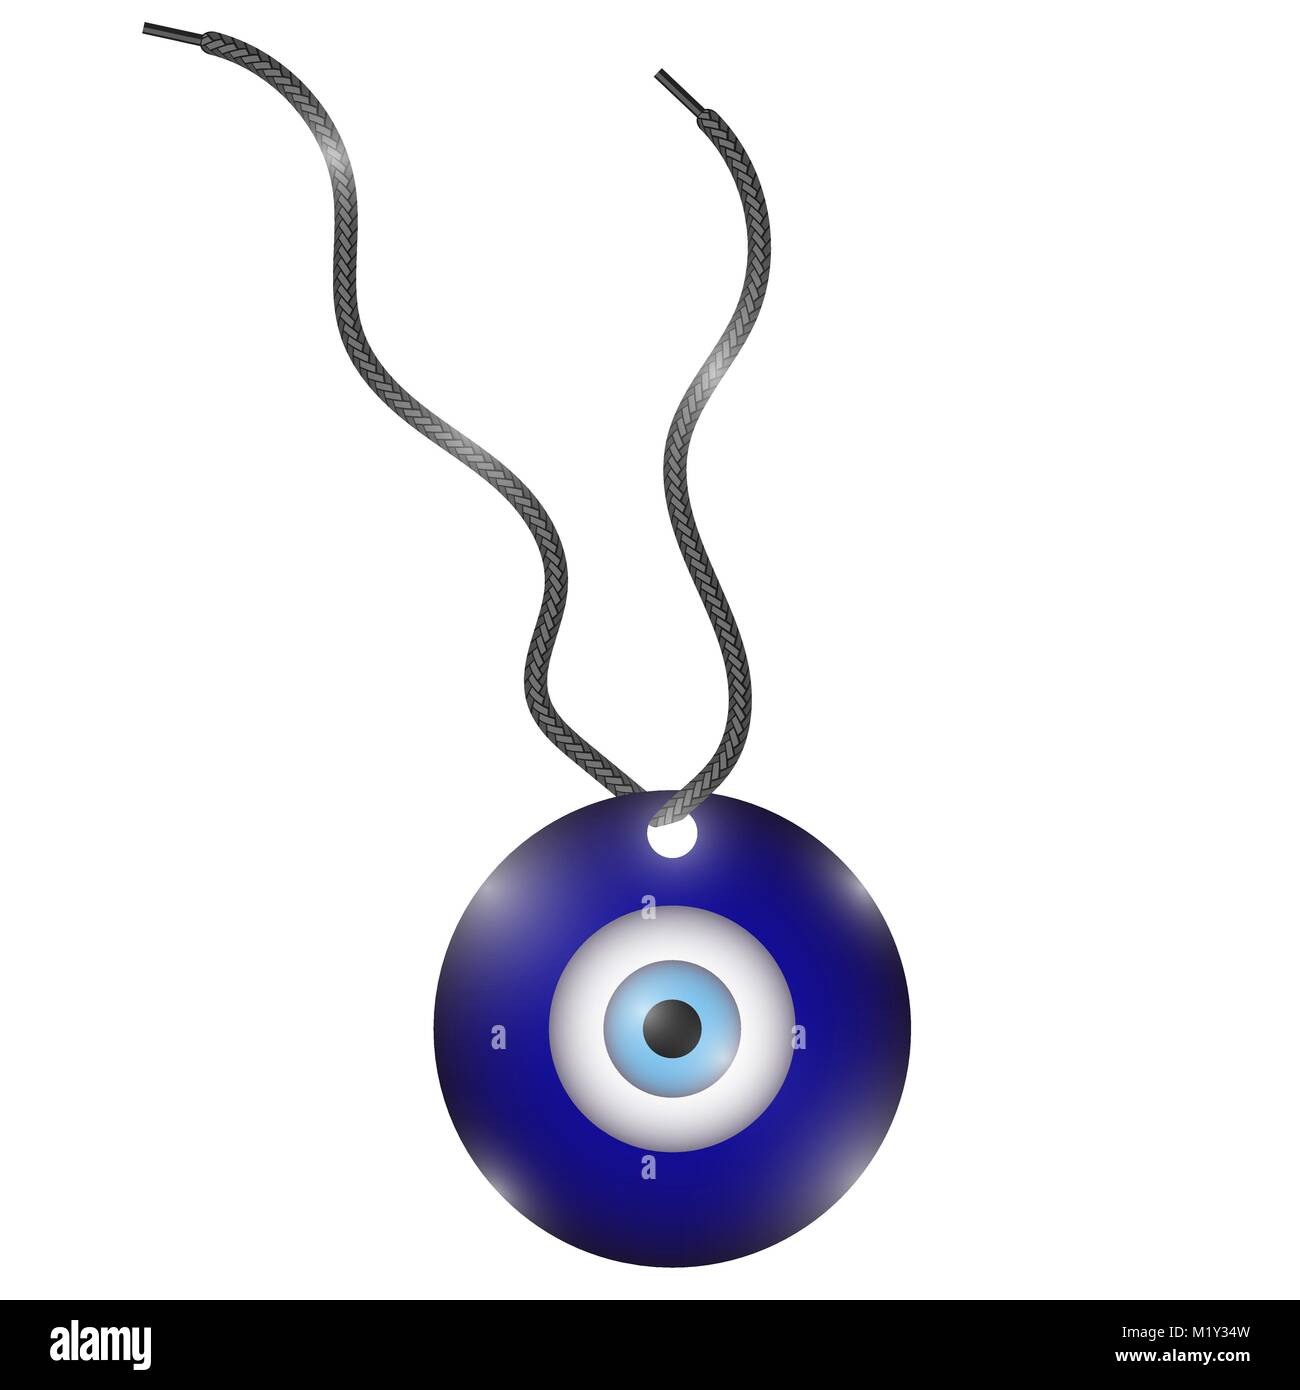 https://c8.alamy.com/compde/m1y34w/glas-evil-eye-symbol-turkische-traditionelle-amulett-nazar-schutz-talisman-blue-magic-souvenir-m1y34w.jpg